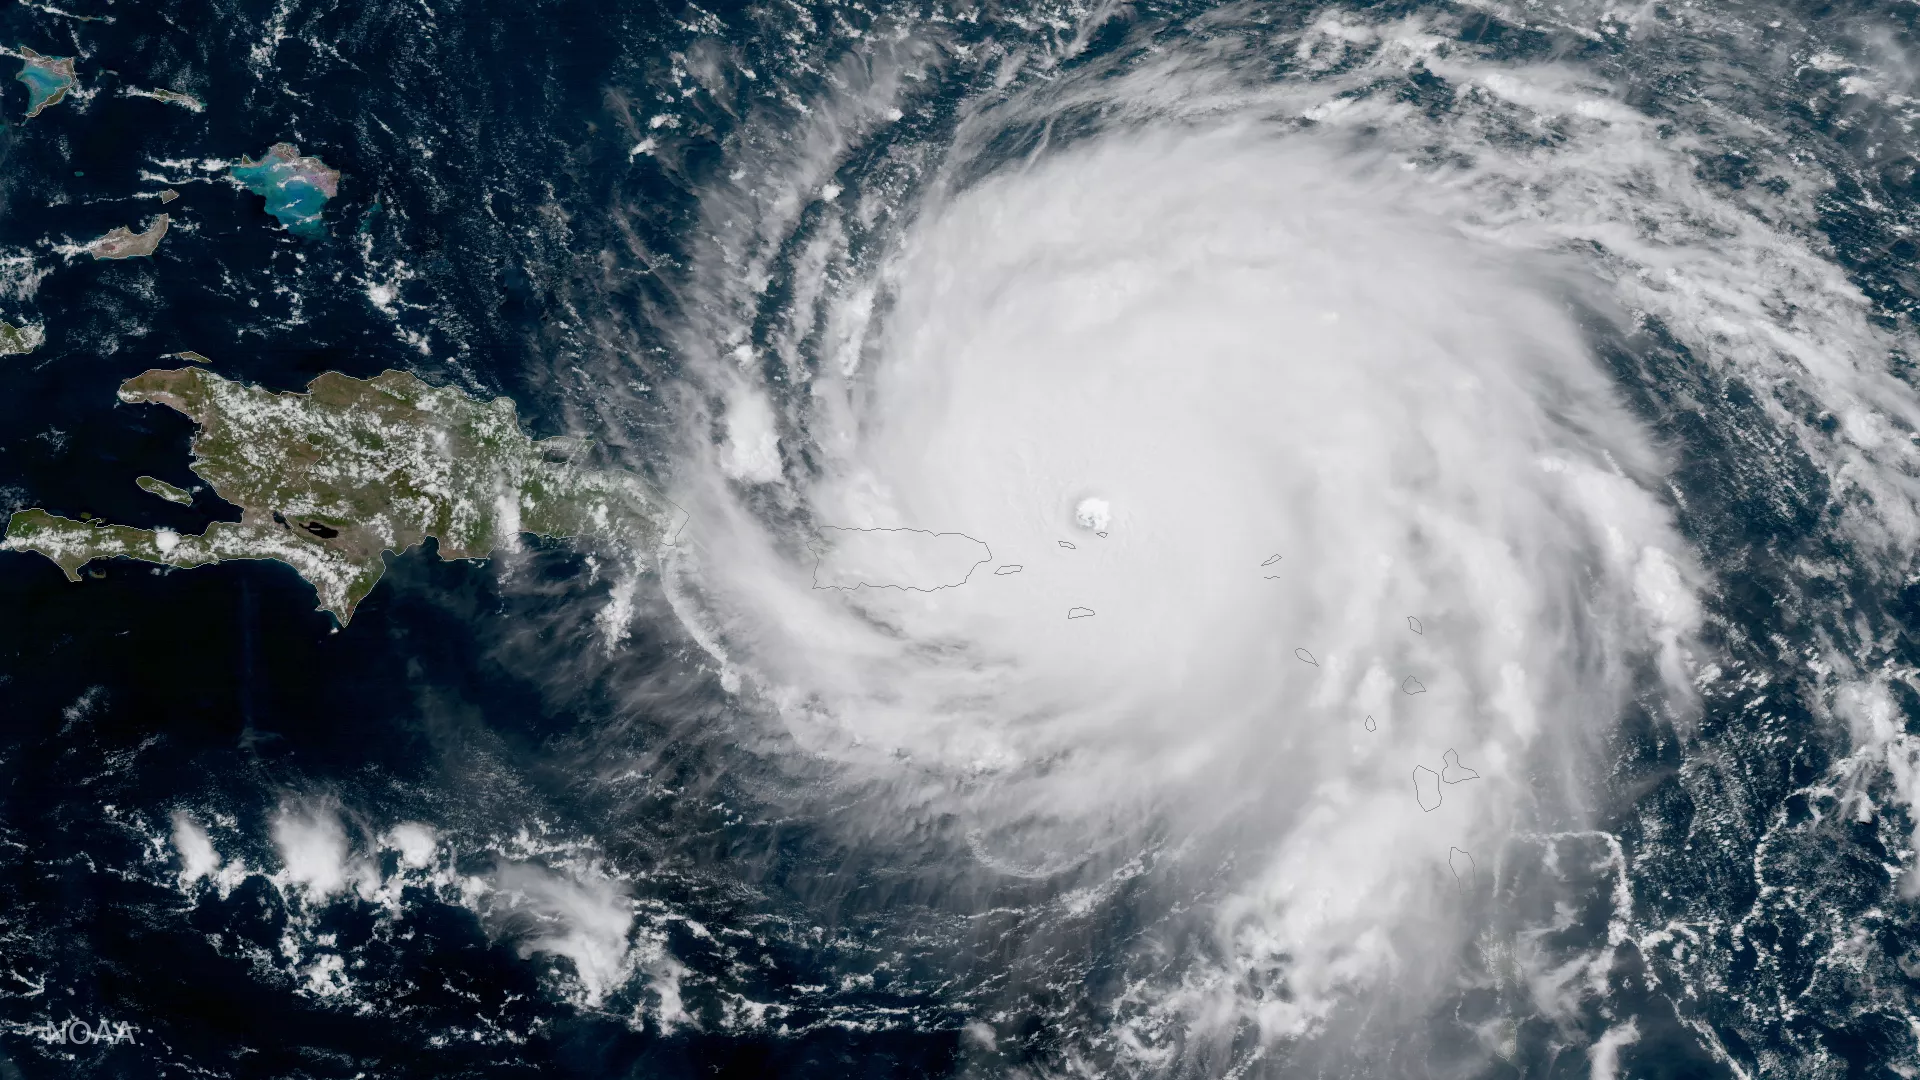 Image of Hurricane Irma